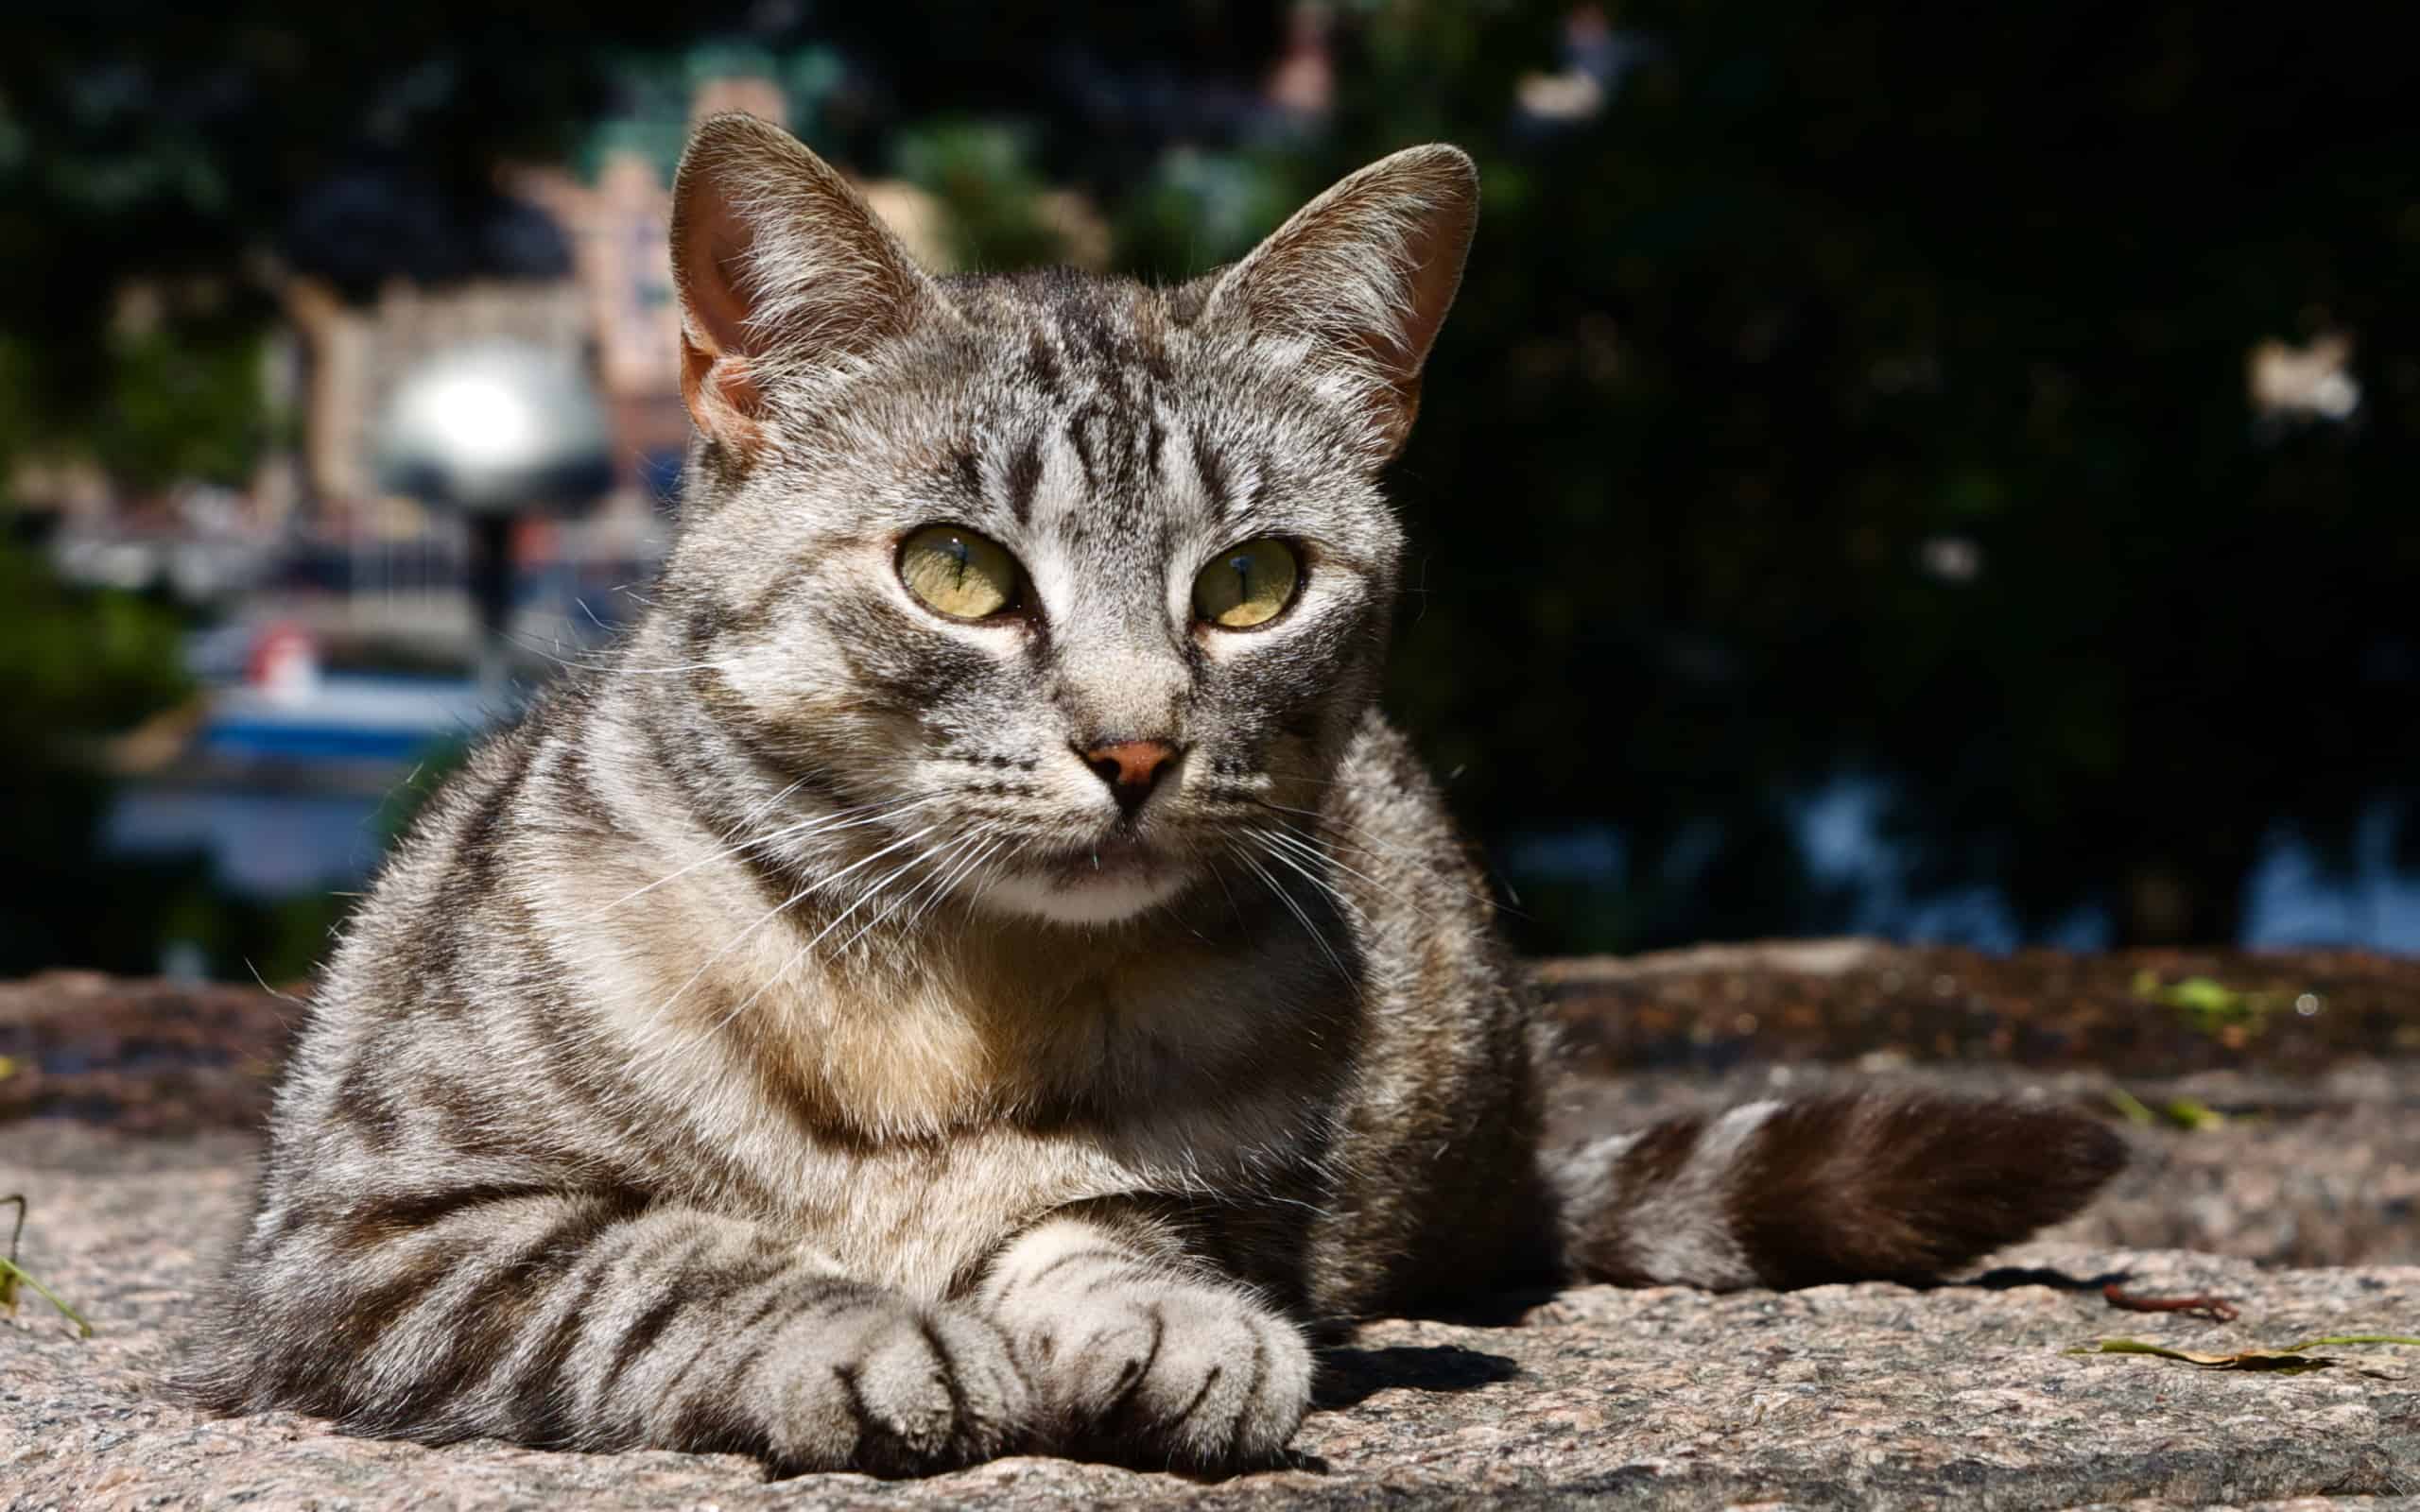 sokaktan kedi sahiplenirken nelere dikkat etmeli sokak kedisi eve nasil alisir kediler hakkinda bilgi petipet